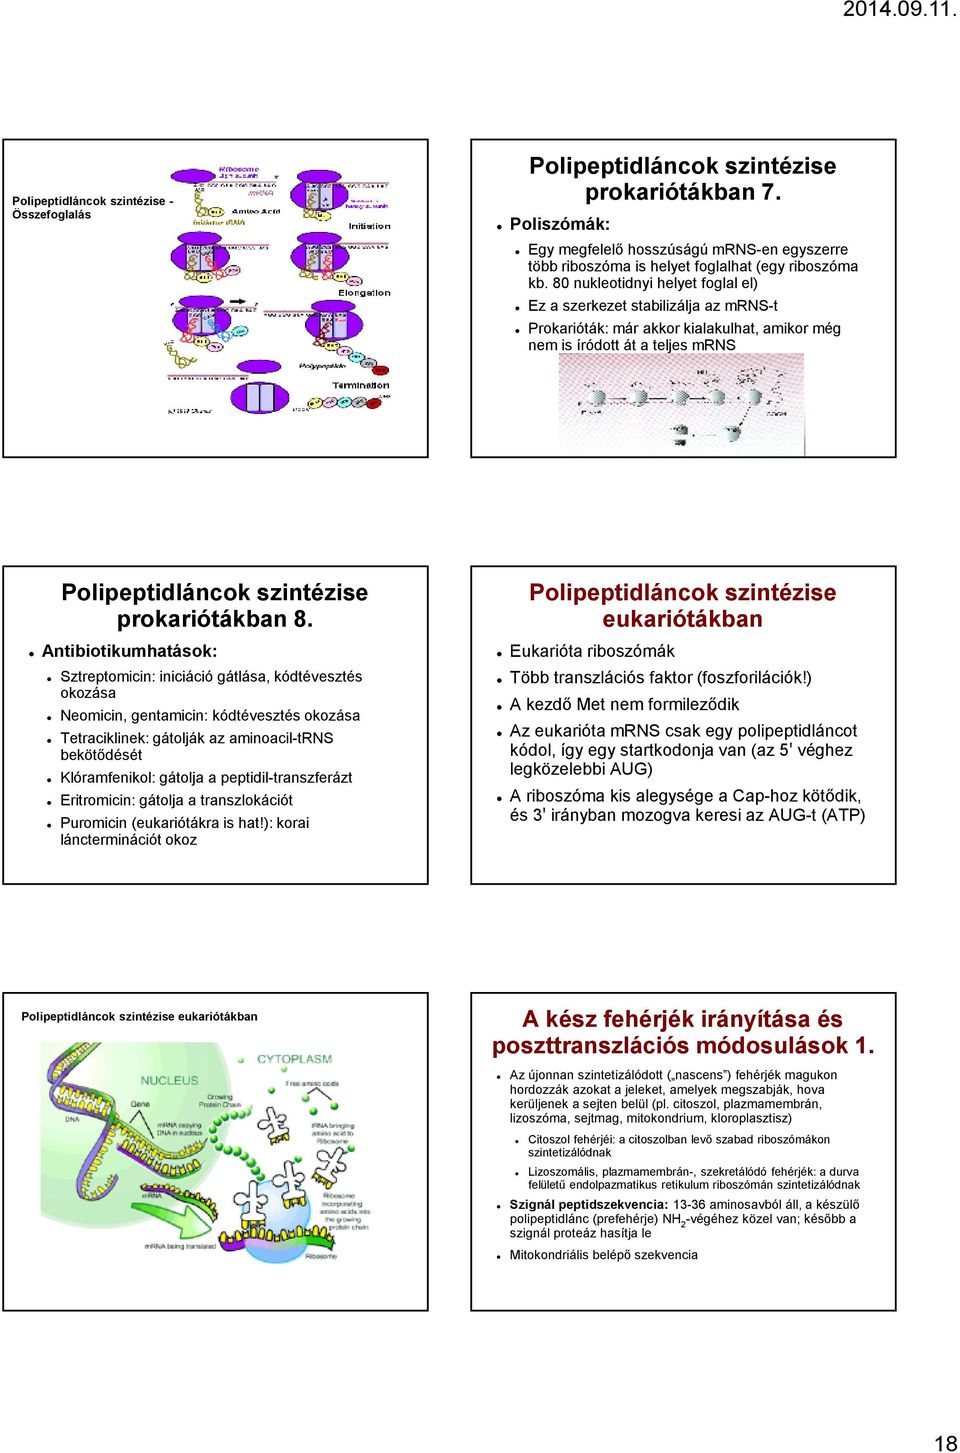 transzlációs riboszóma szerkezet és biogenezis anti aging